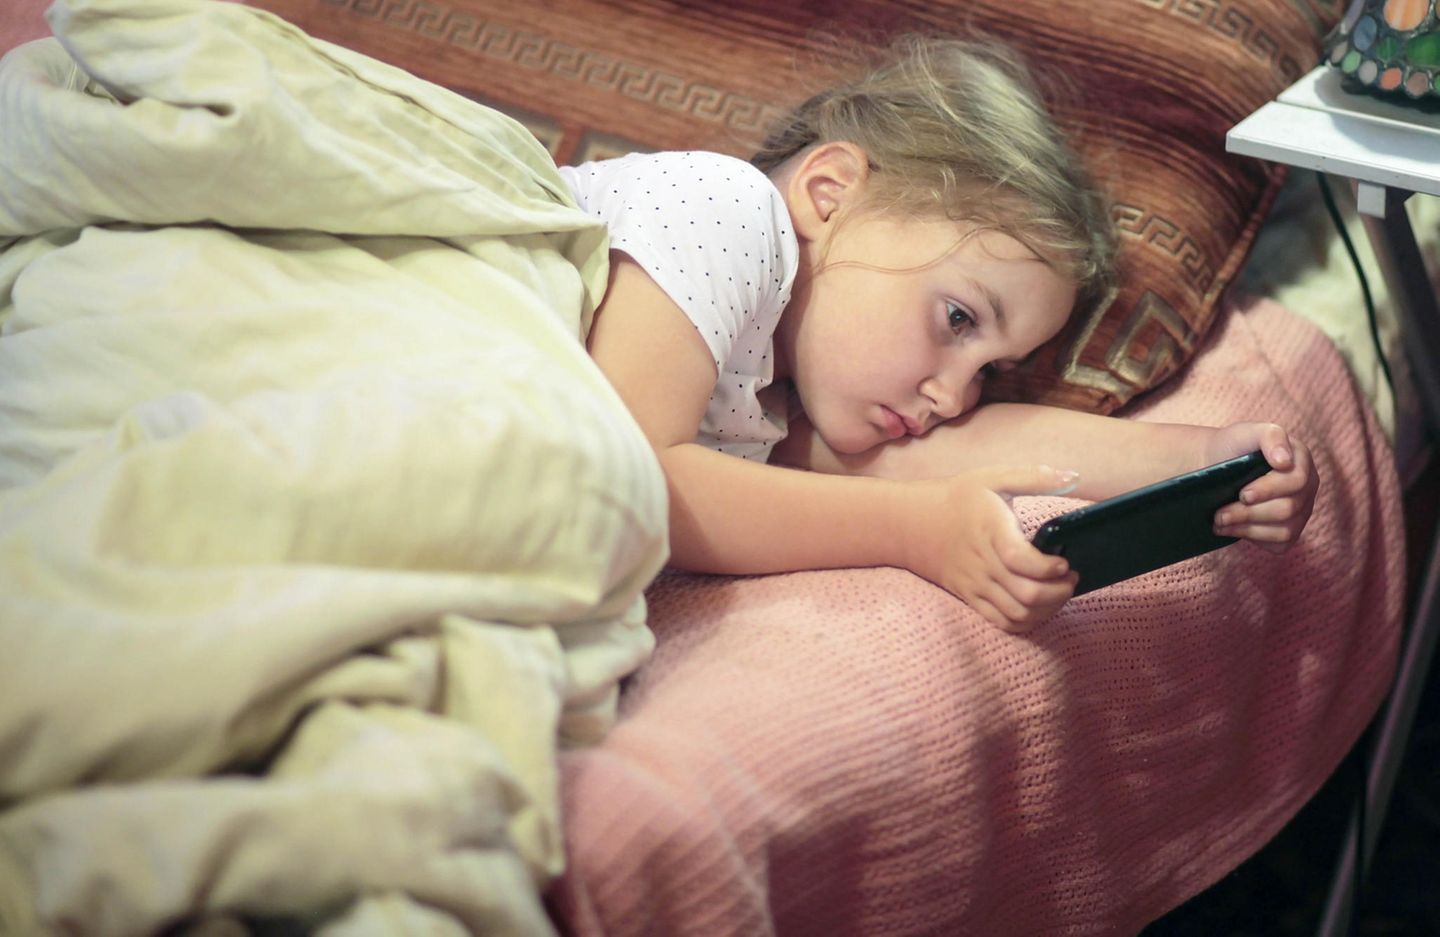 Medienerziehung: Kind mit Handy im Bett